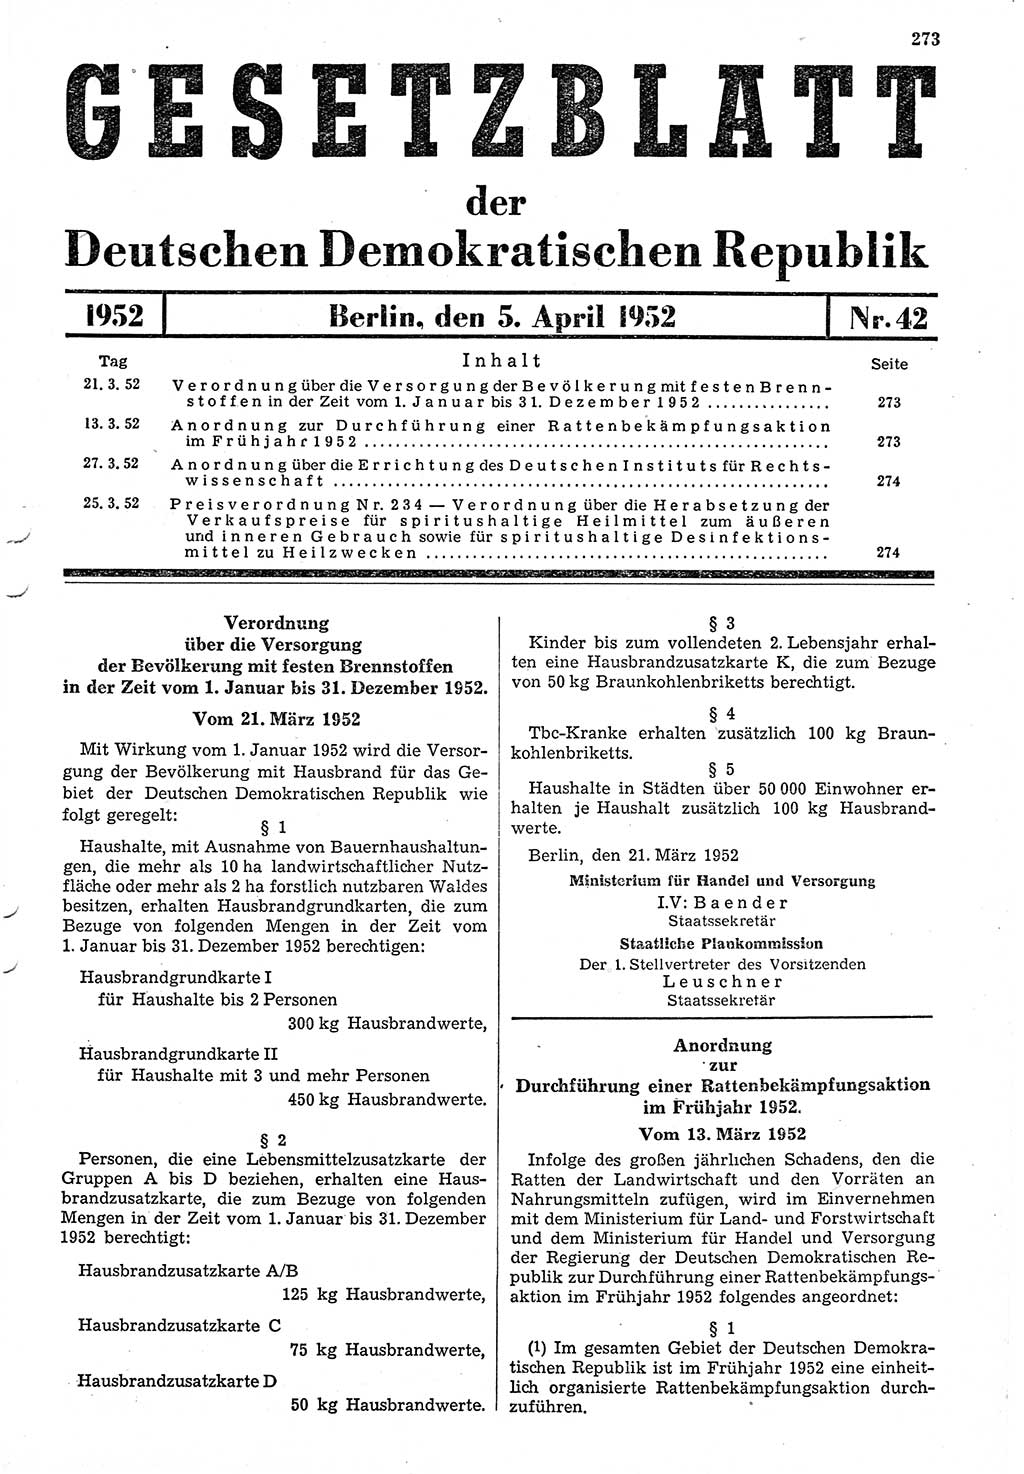 Gesetzblatt (GBl.) der Deutschen Demokratischen Republik (DDR) 1952, Seite 273 (GBl. DDR 1952, S. 273)